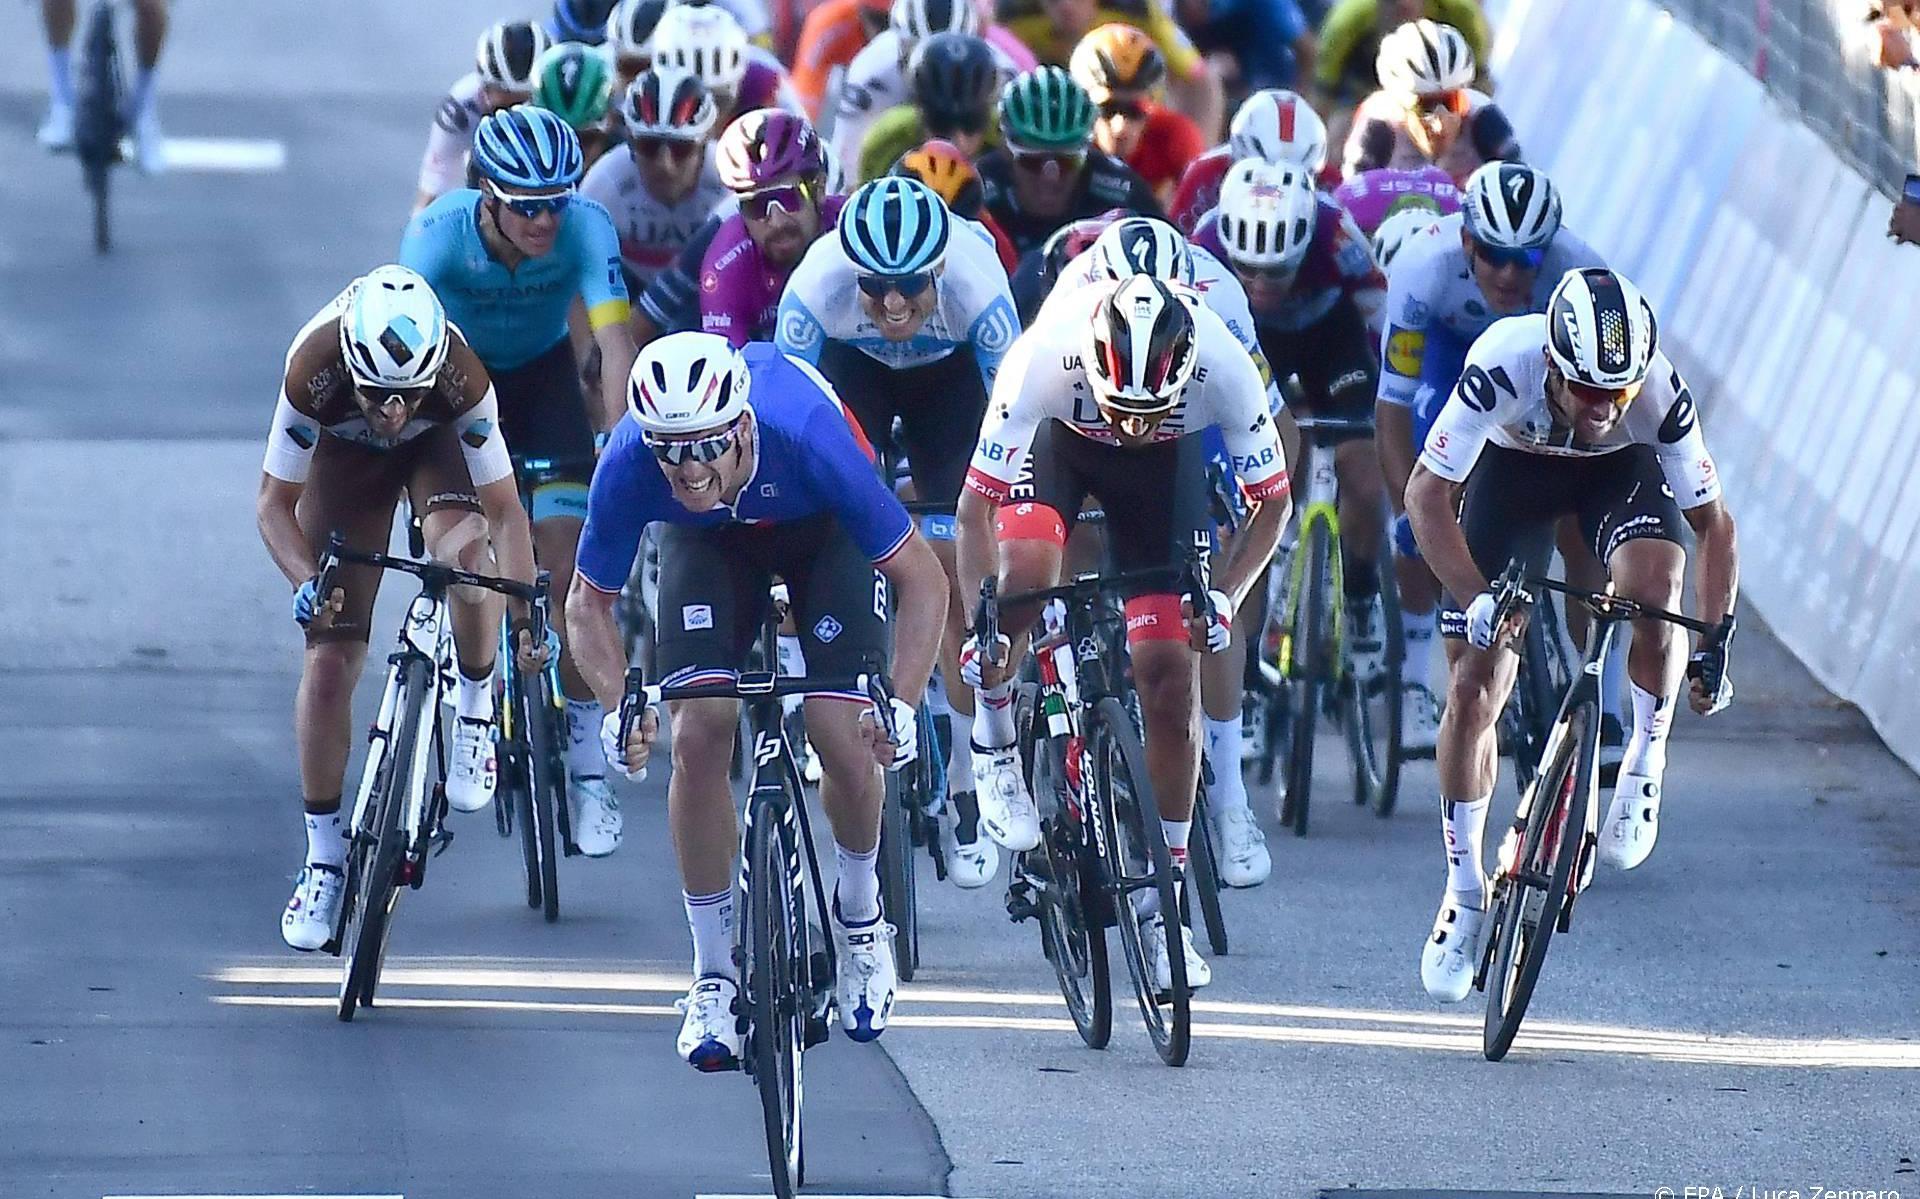 Wind kan opnieuw spelbreker zijn tijdens komende Giro-etappes